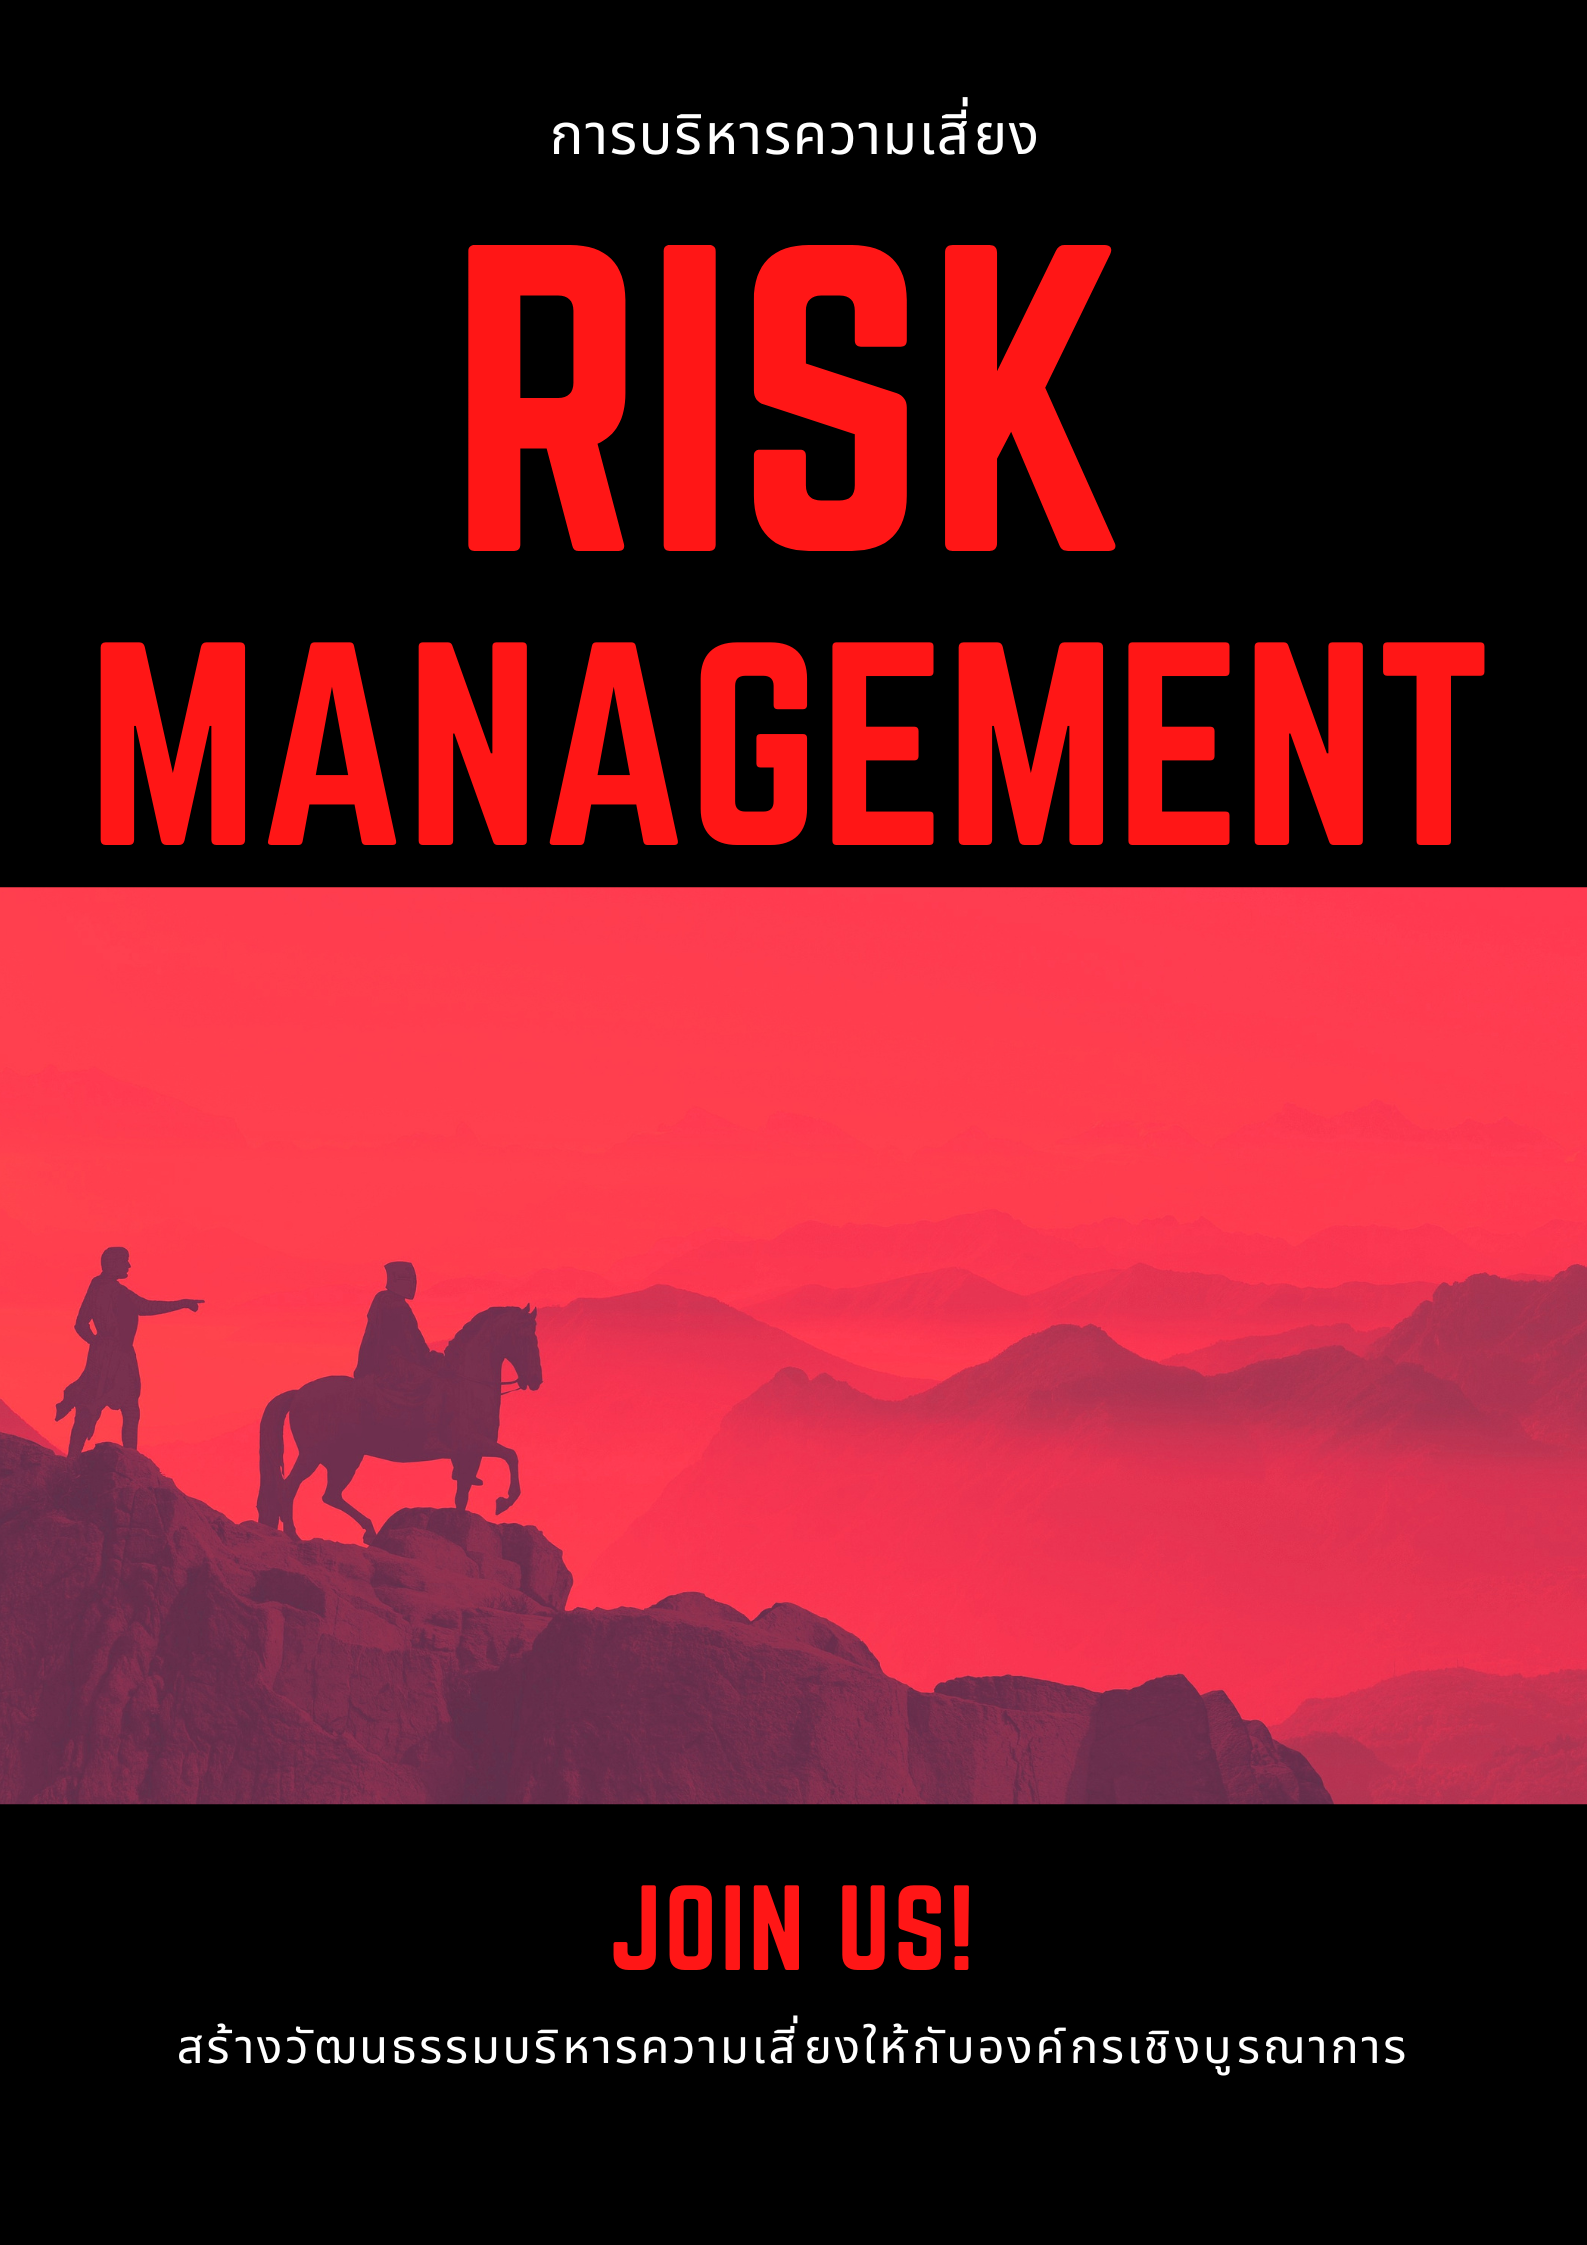 หลักสูตร การจัดการความเสี่ยง (Risk Management)